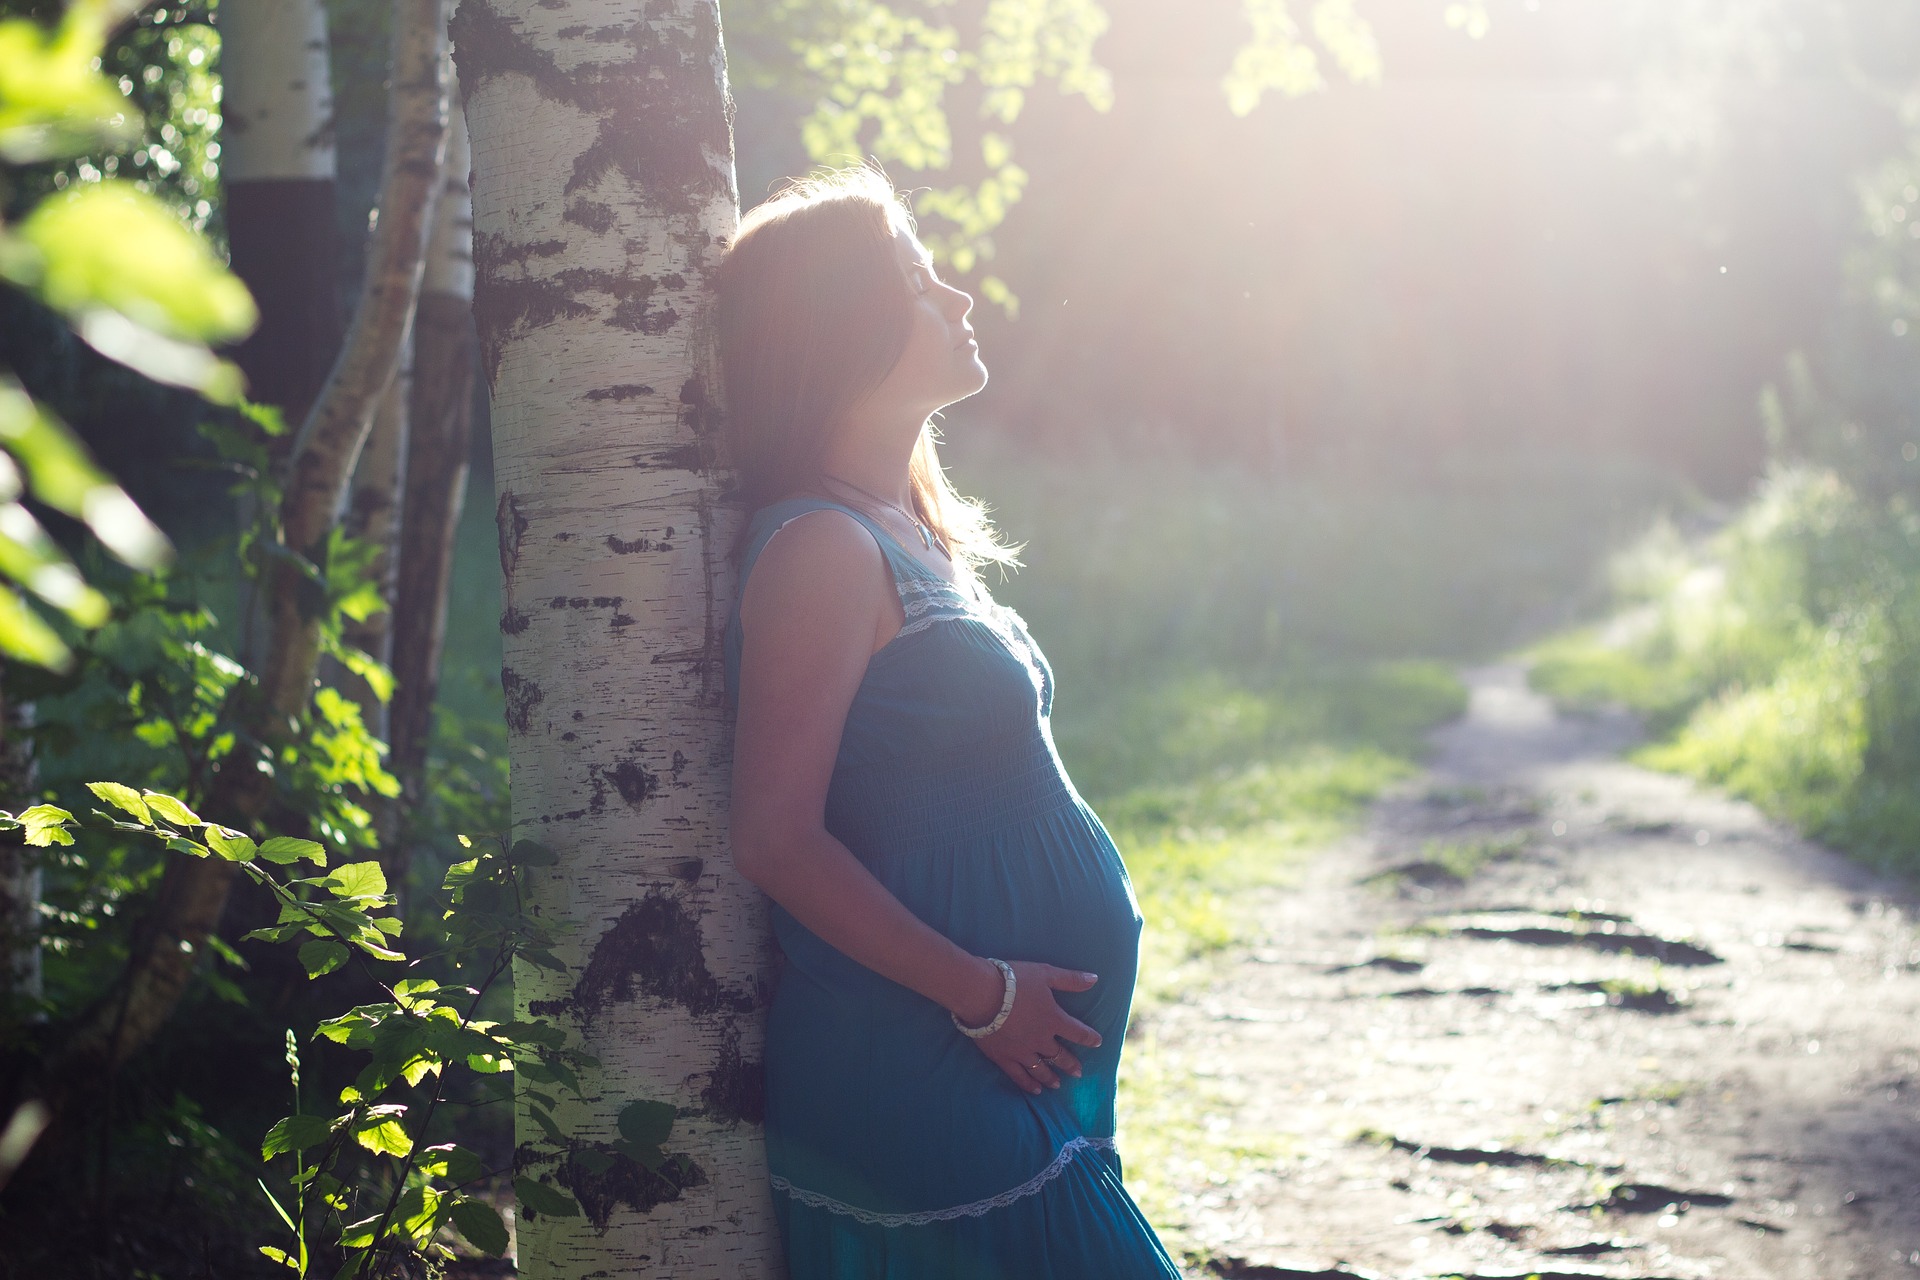 Estrés prenatal y desarrollo fetal